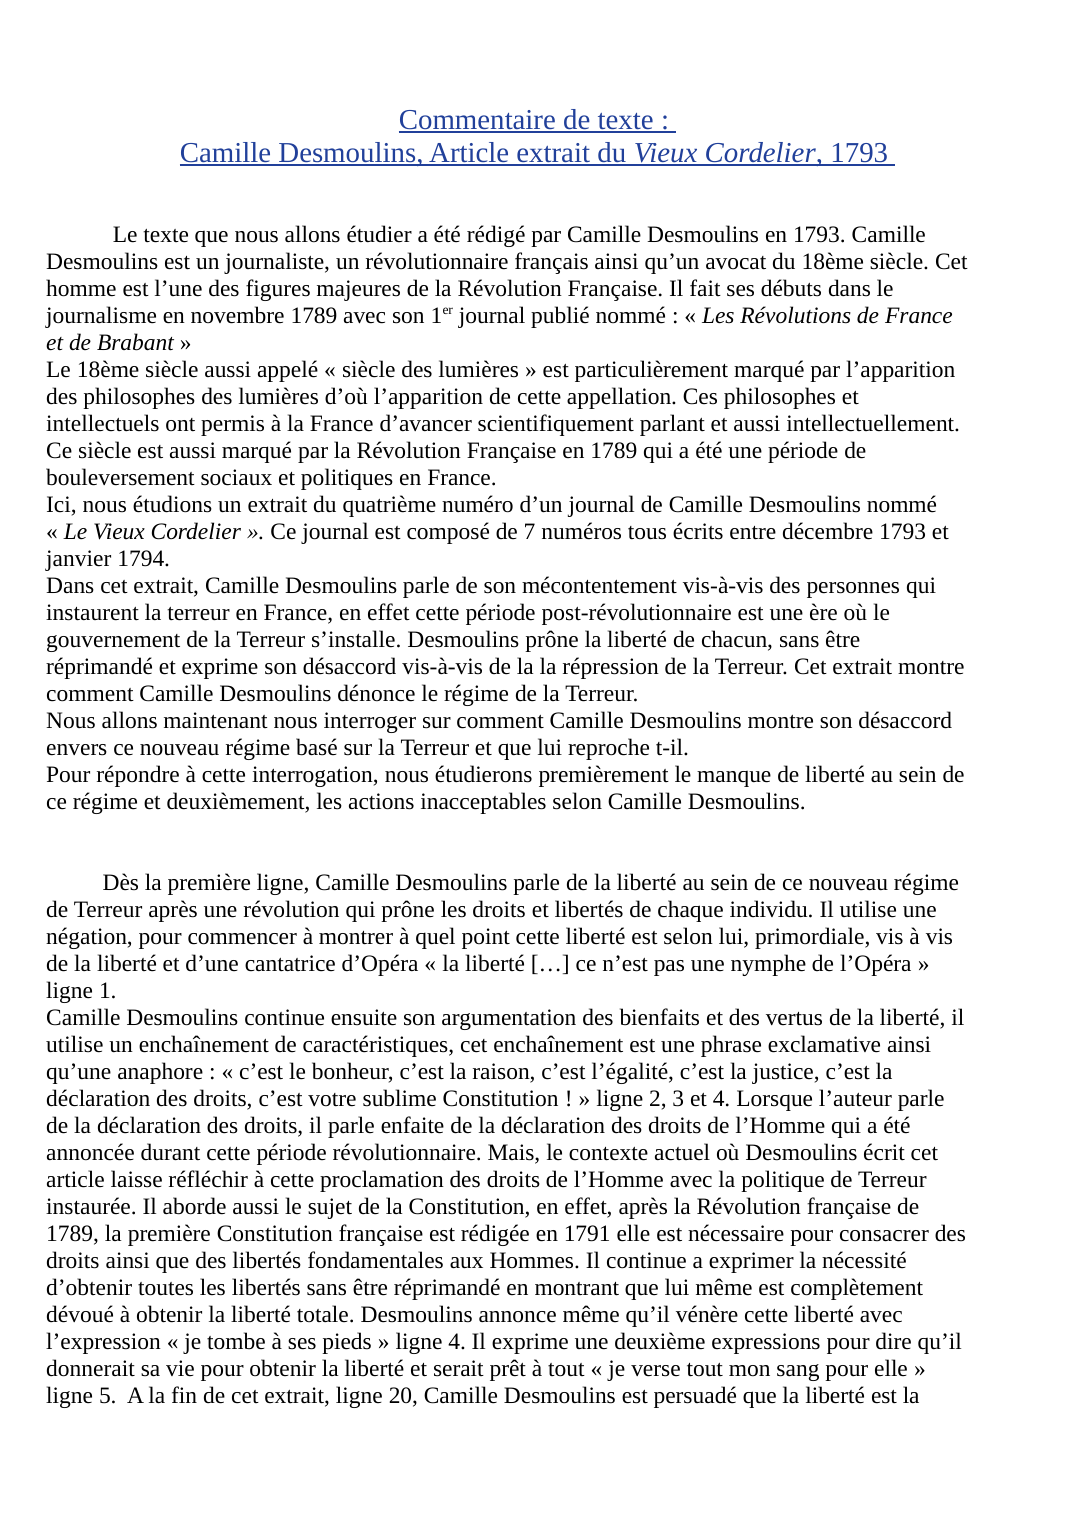 Prévisualisation du document Commentaire de texte : Camille Desmoulins extrait du Vieux Cordelier